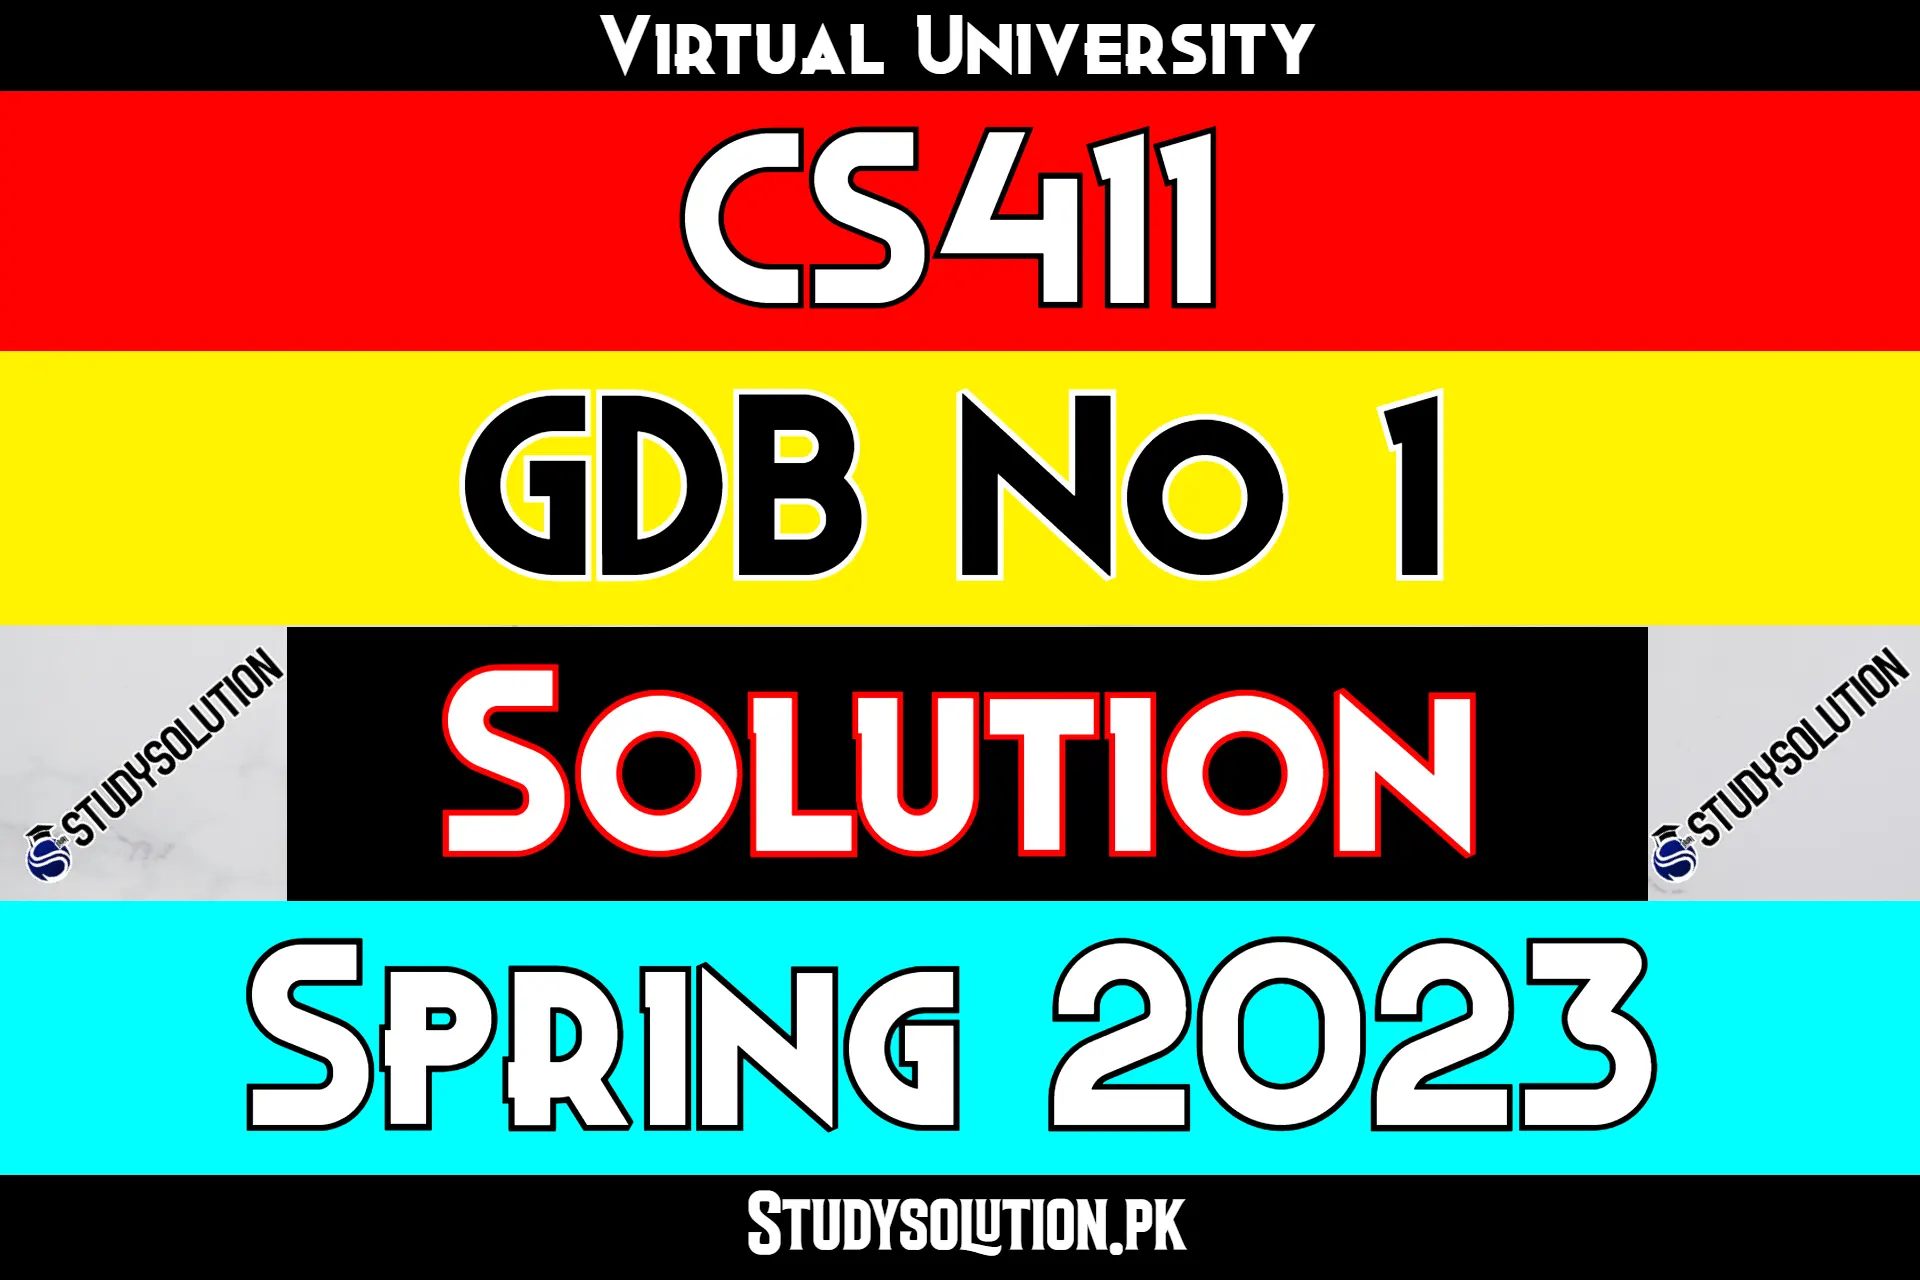 CS411 GDB No 1 Solution Spring 2023